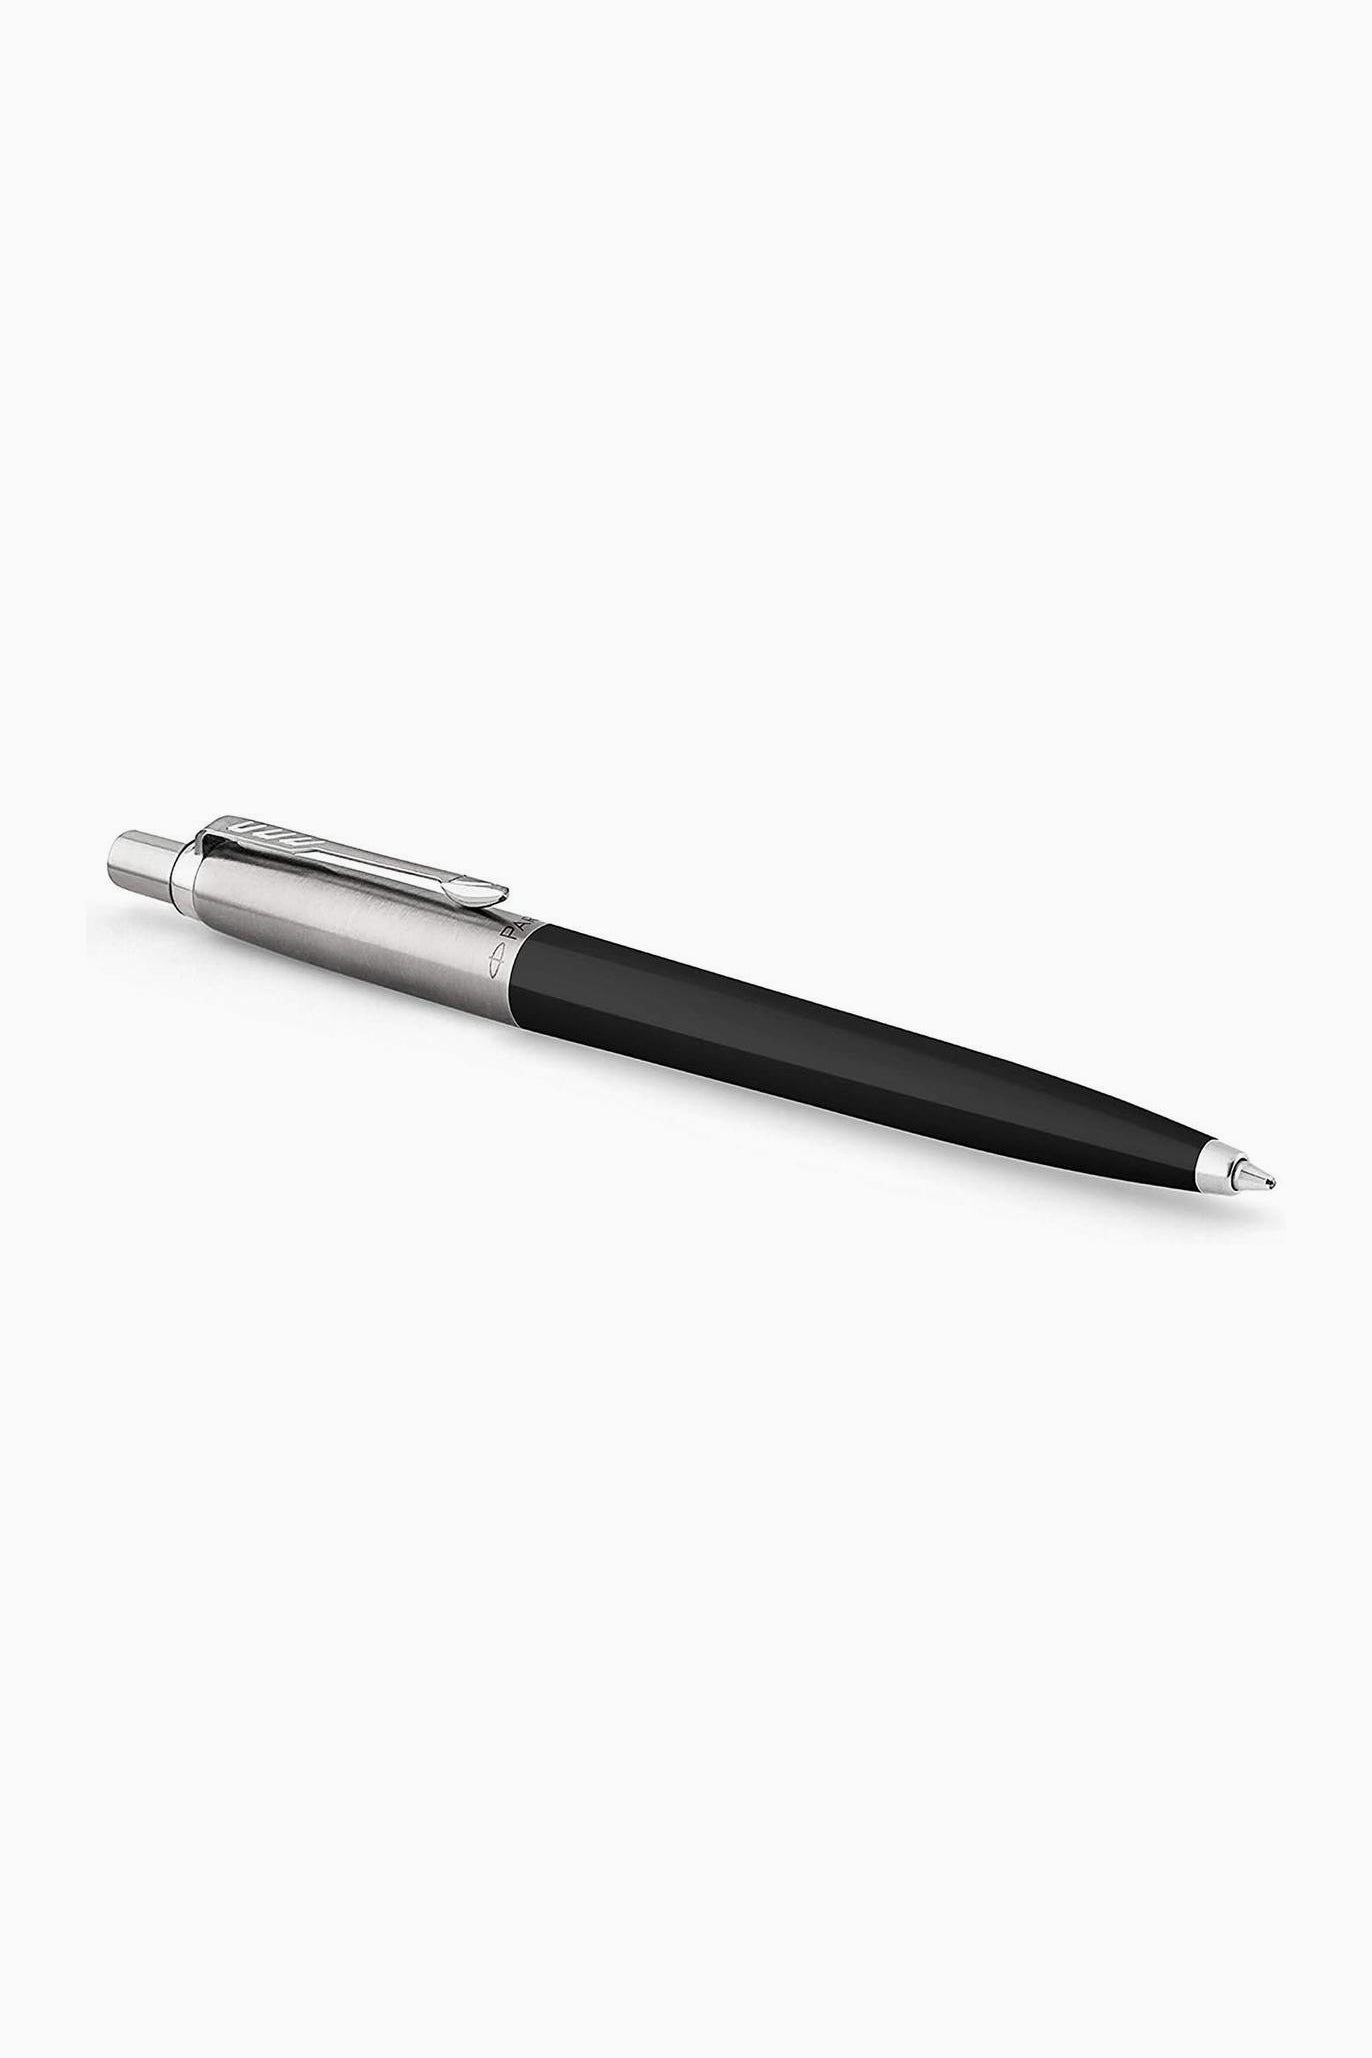 Jotter ballpoint pen black-Parker-[interior]-[design]-KIOSK48TH